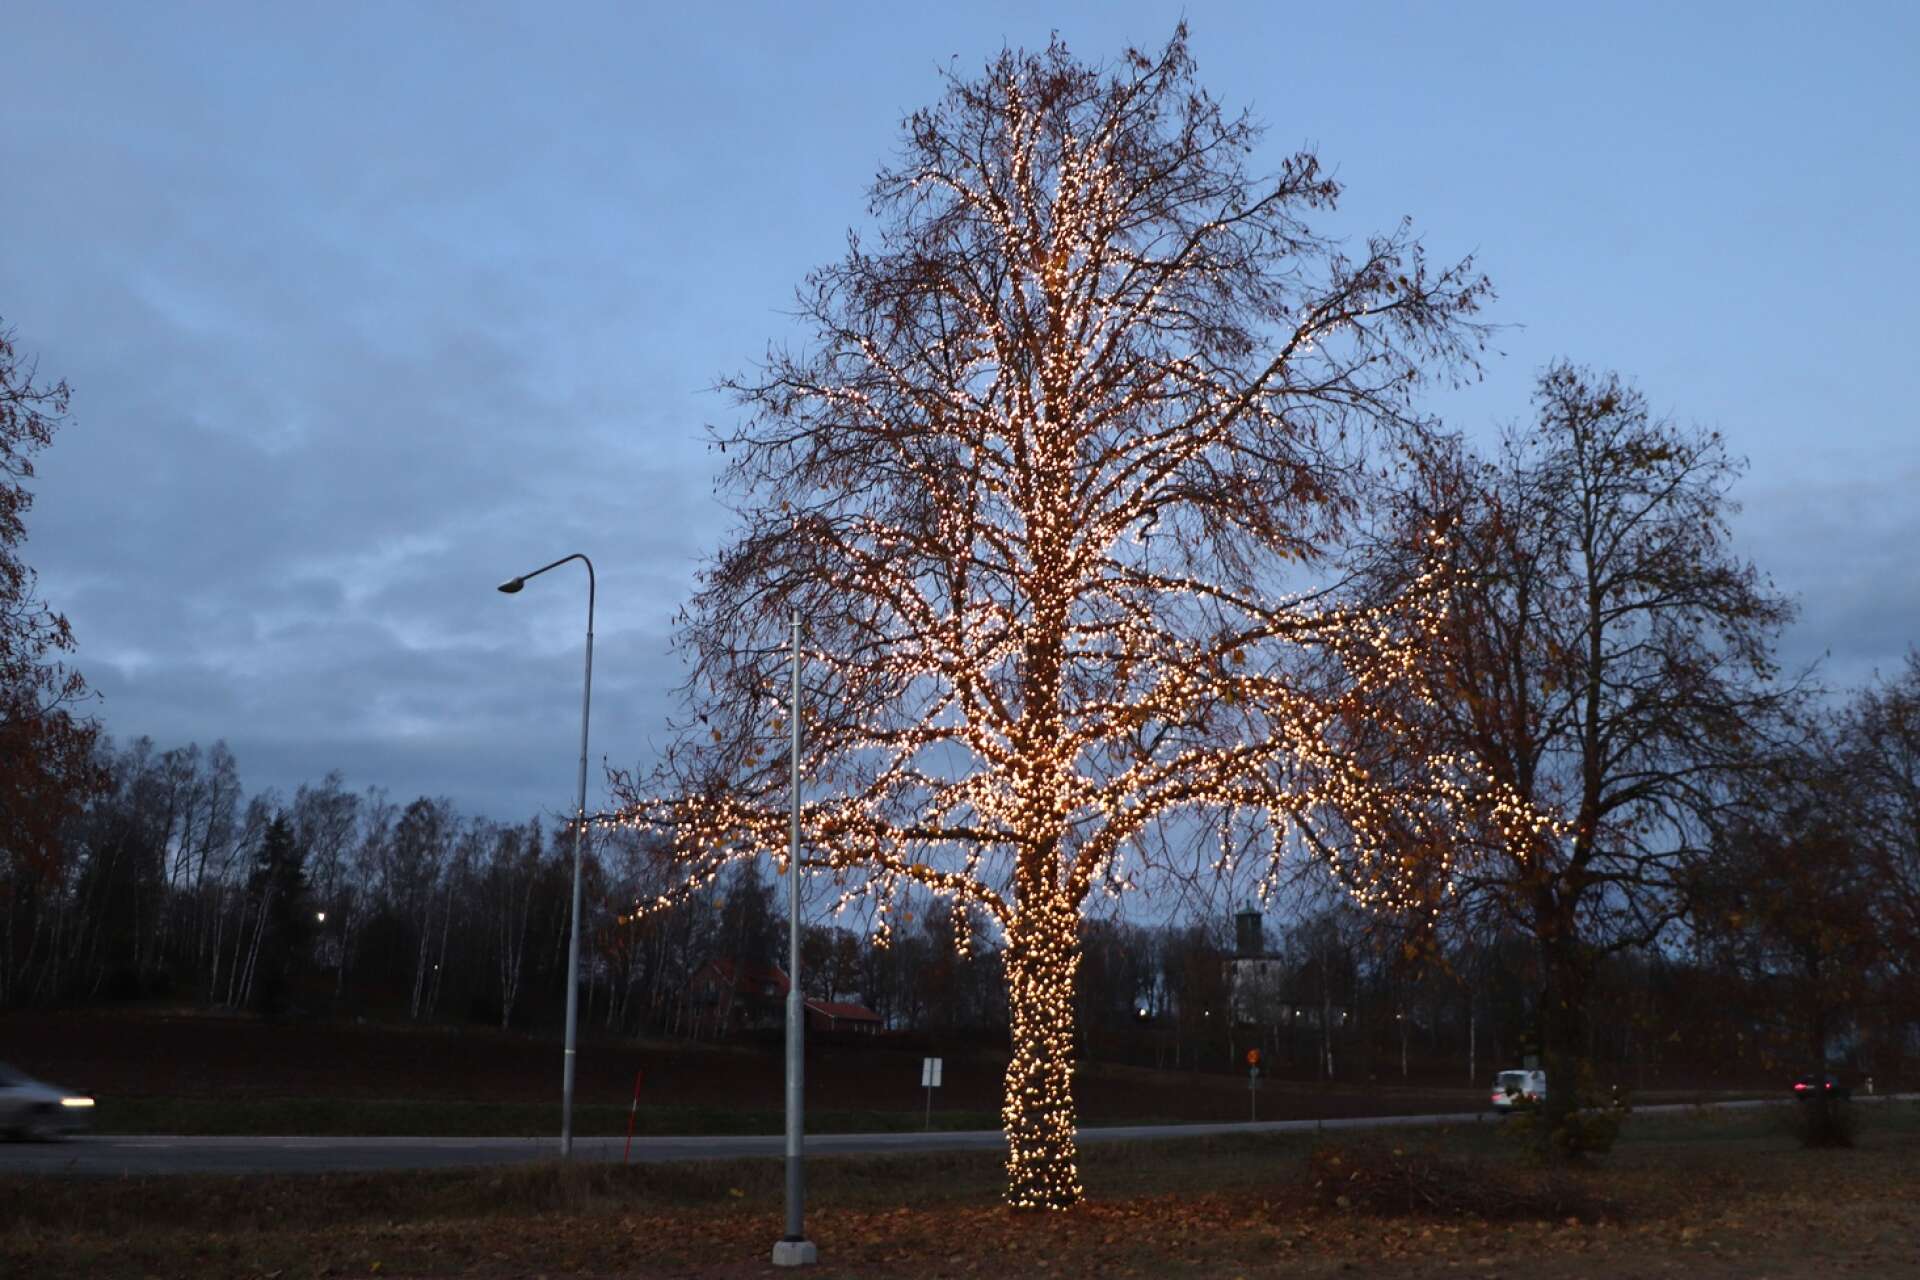 En nyhet inför julen är belysta träd som tänds i ytterområdena. I Igelstorp står ett av träden som redan har tänts upp och som lyser vackert i mörkret.